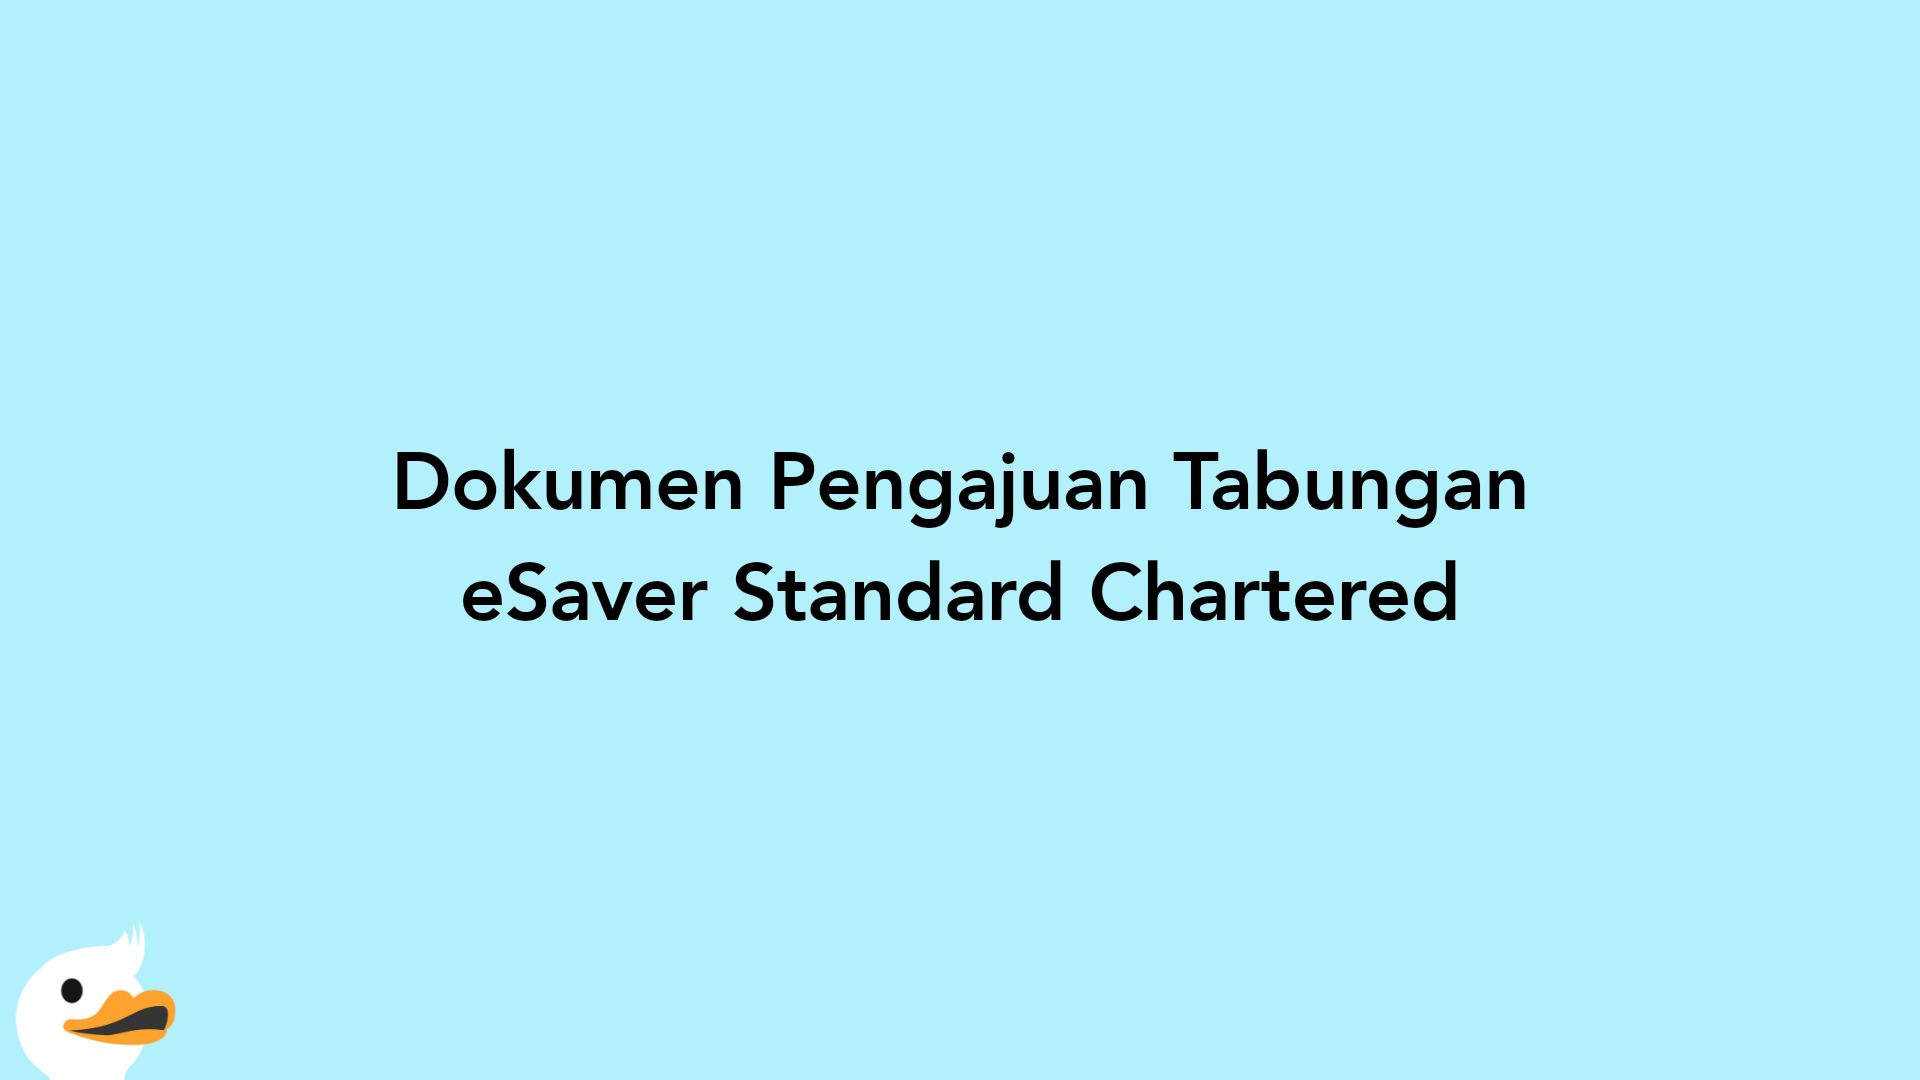 Dokumen Pengajuan Tabungan eSaver Standard Chartered